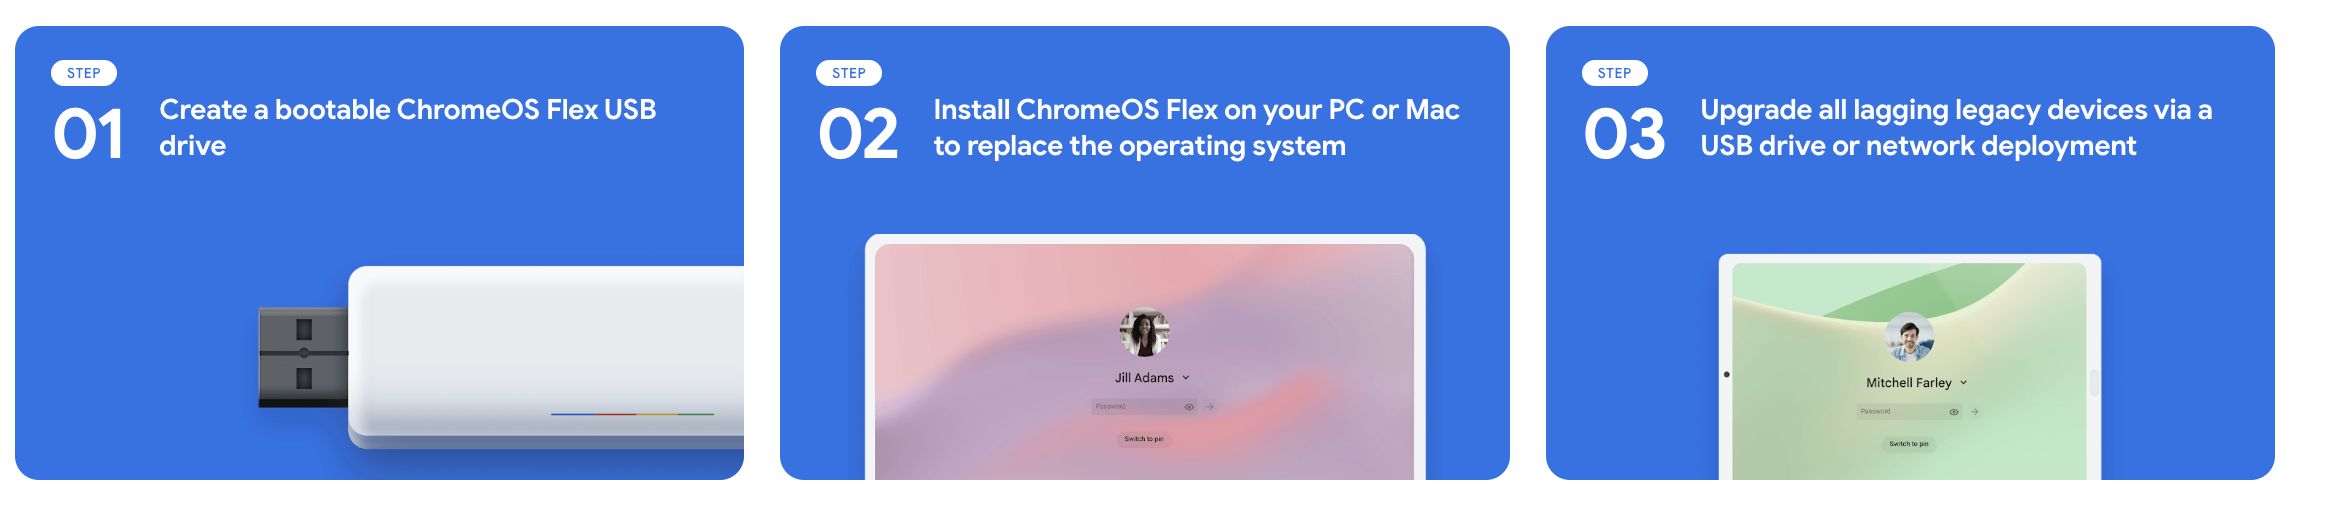 How to install ChromeOS Flex